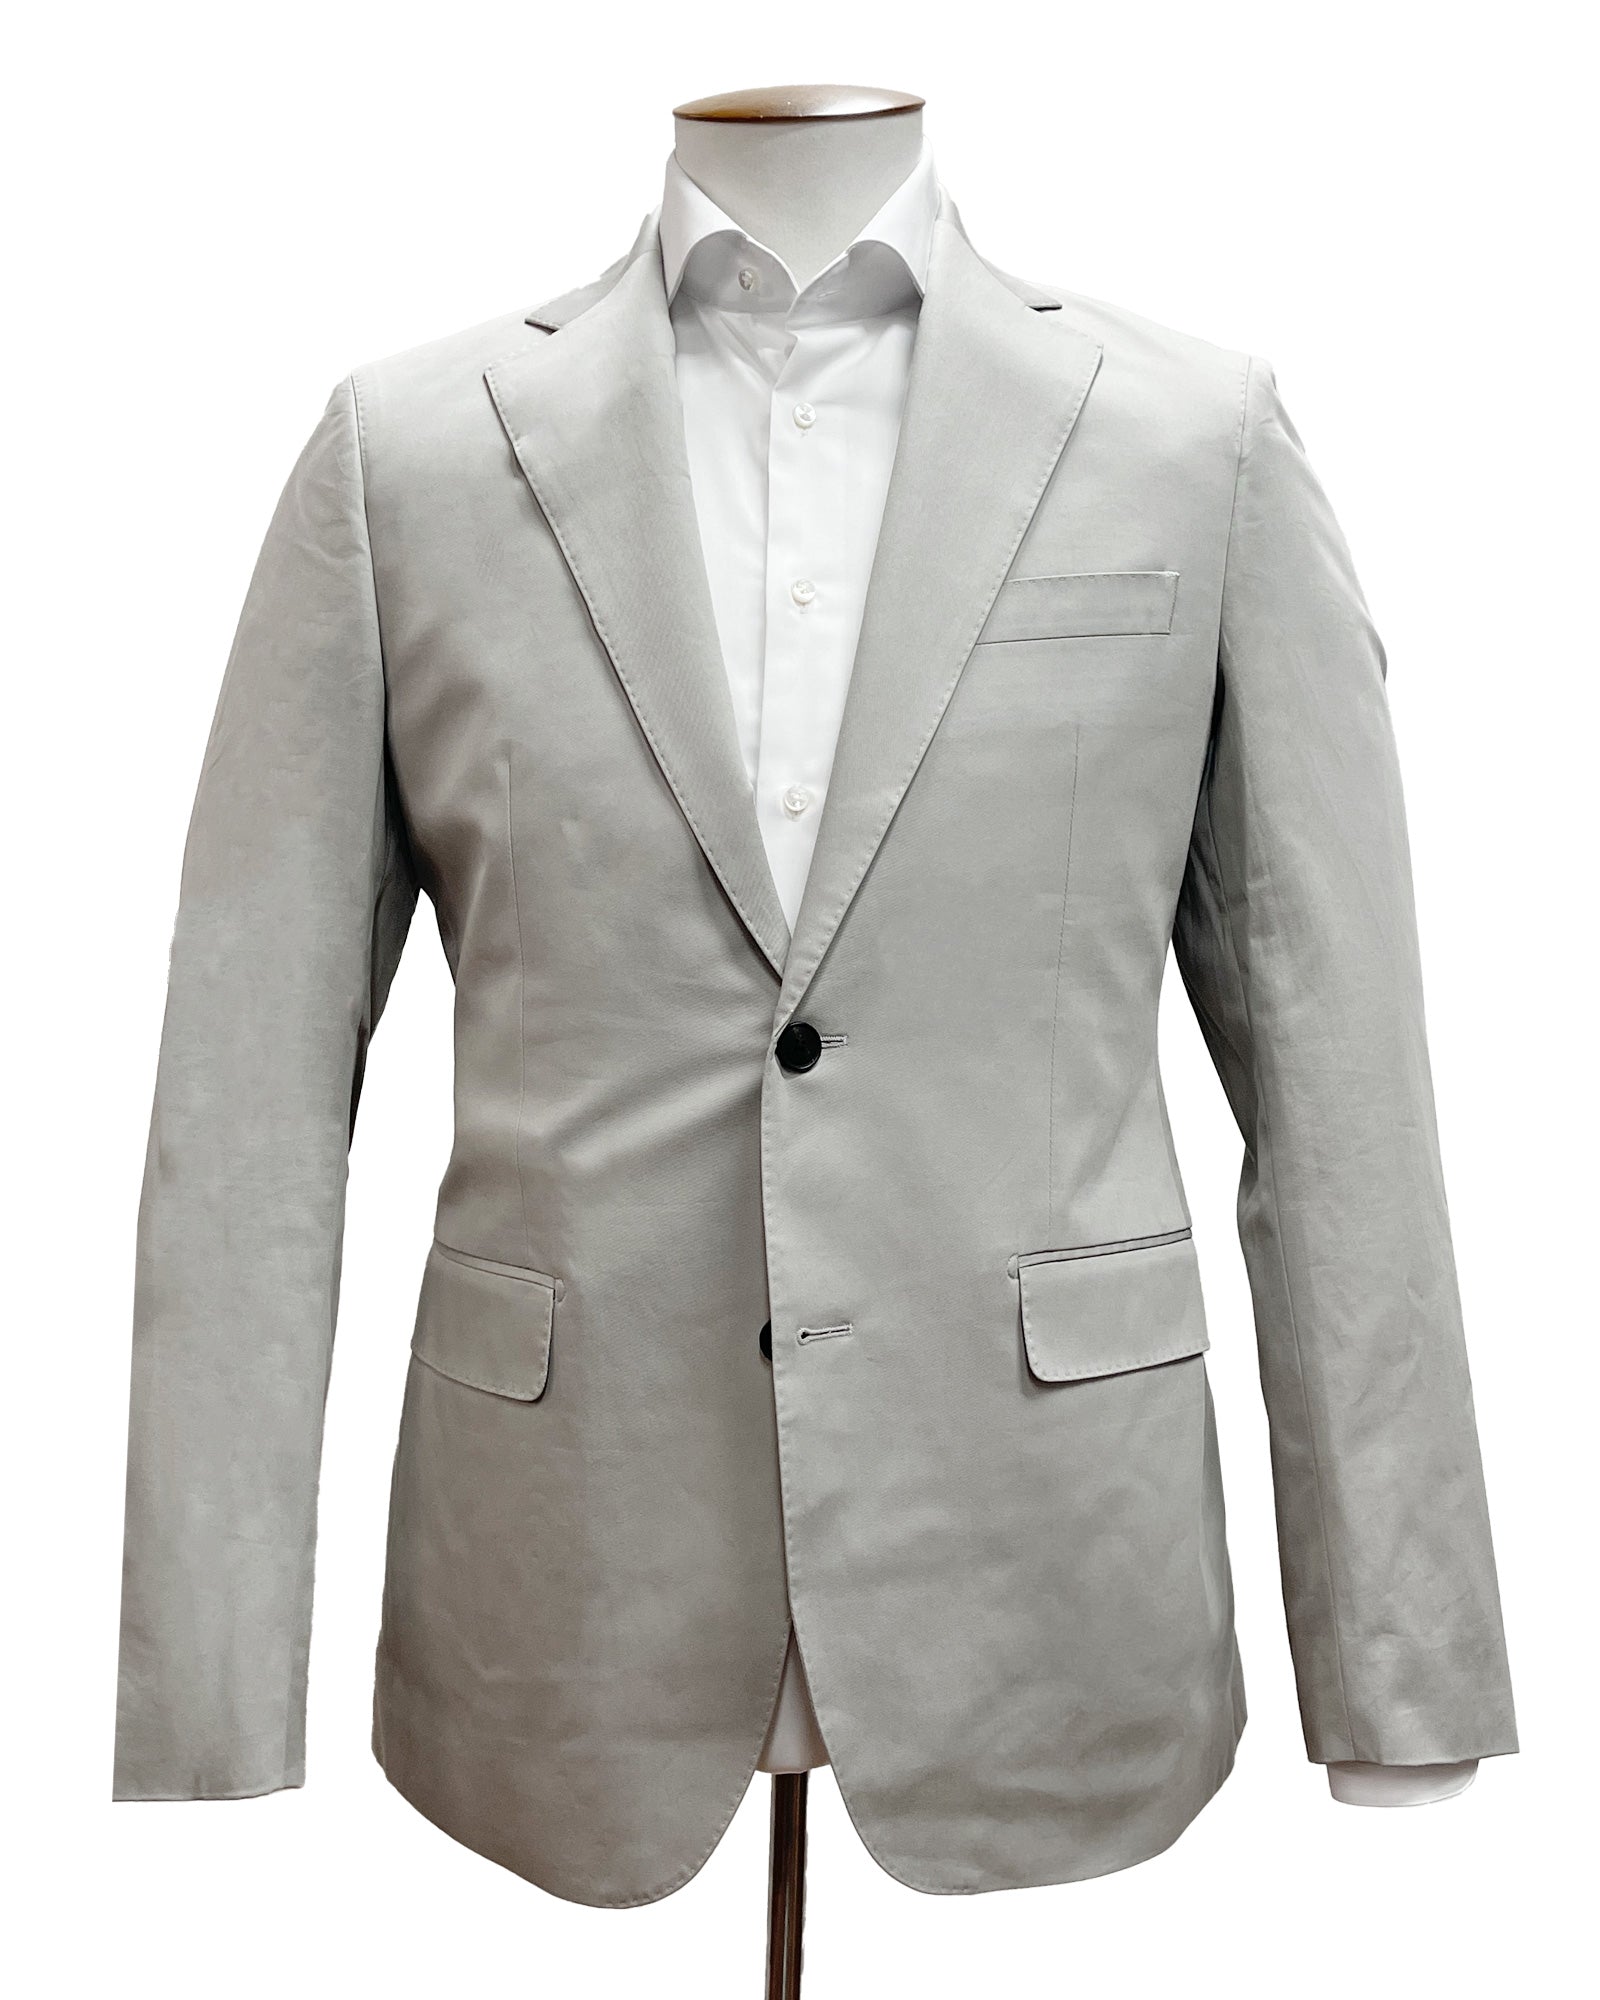 Dove Grey Cotton Two Piece Suit Sample